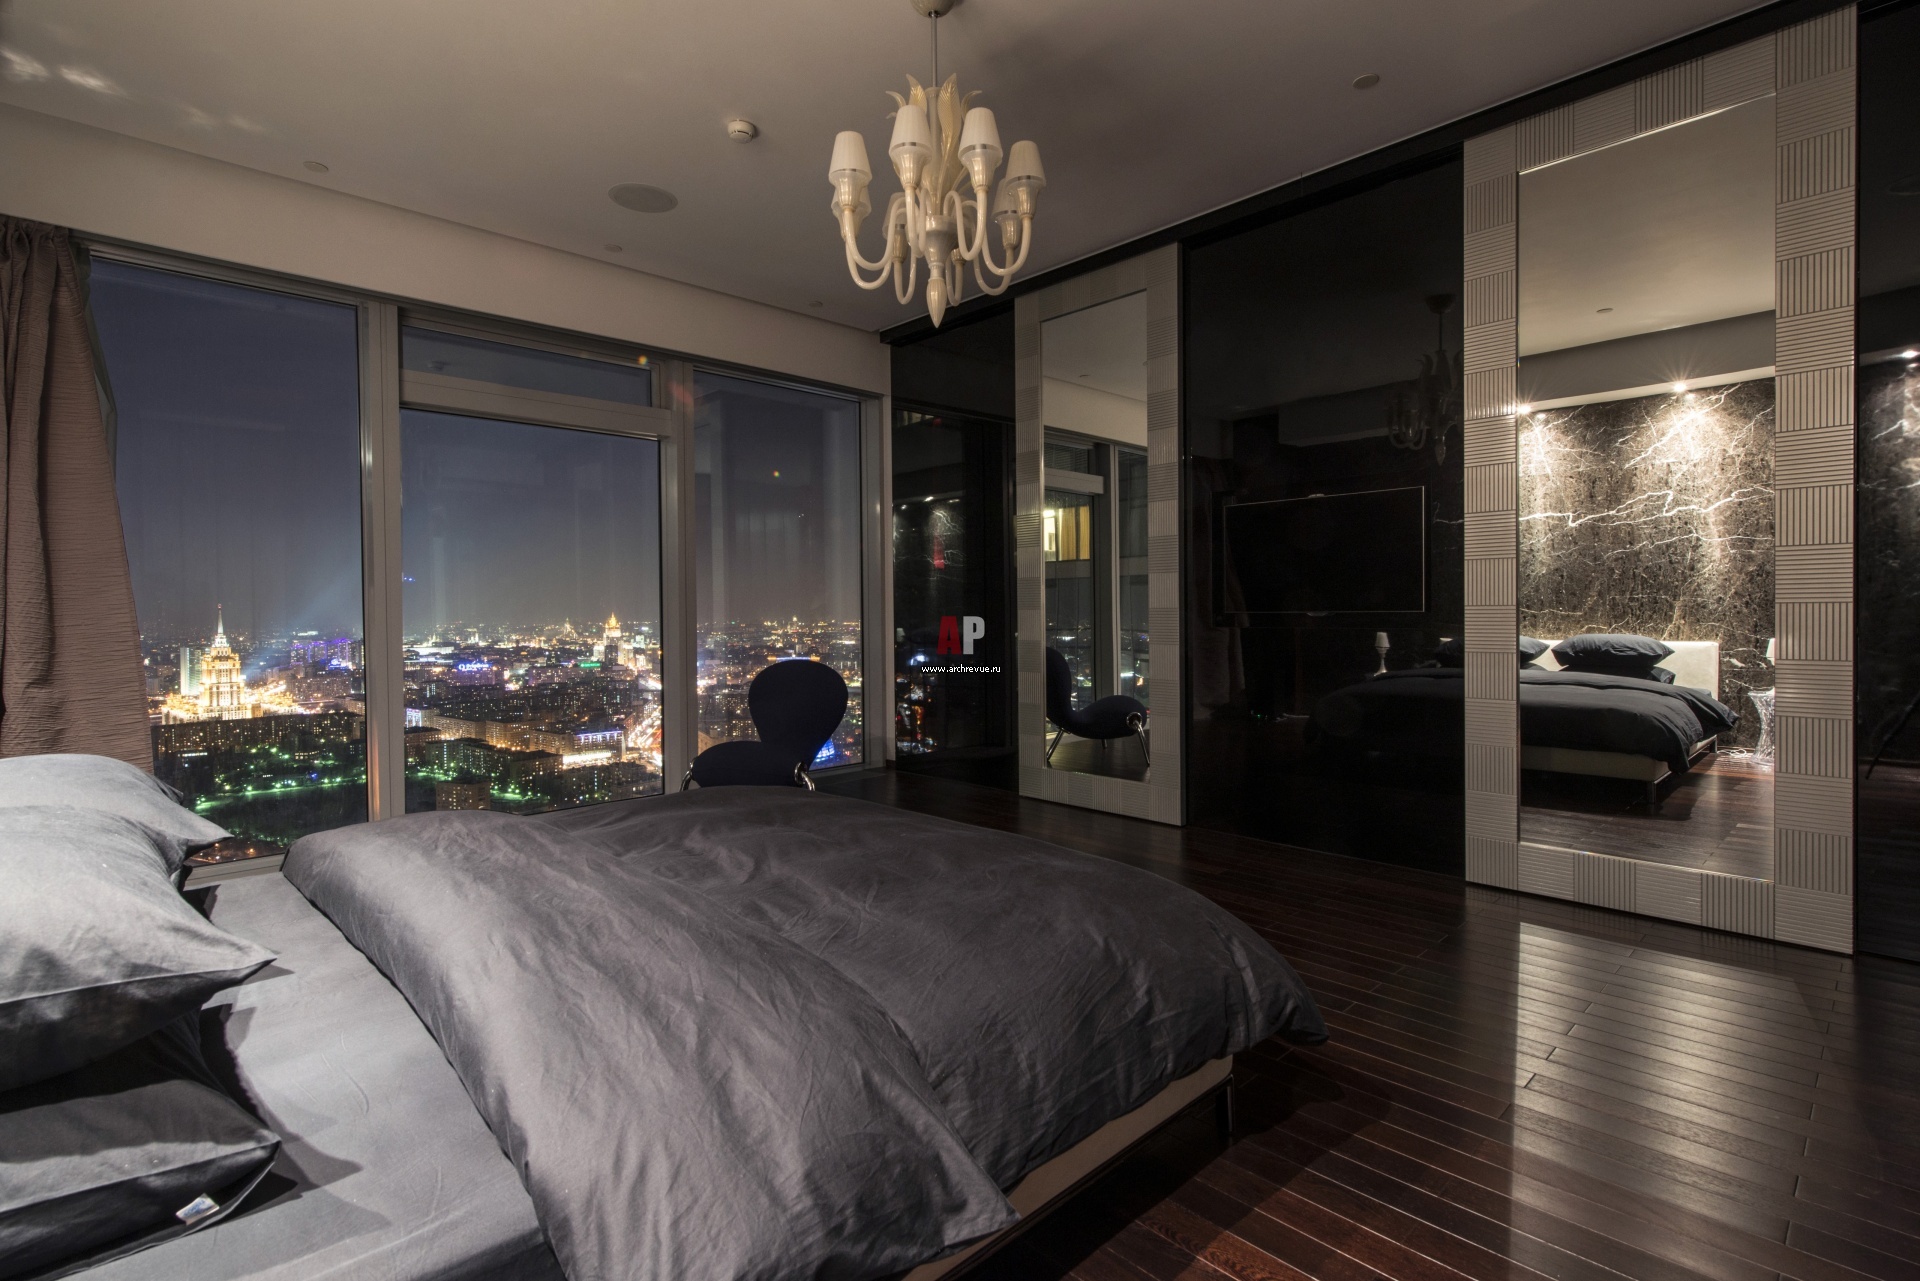 Квартира в москве купить 2 млн. Апартаменты Москоу Сити вид с окна. Спальня в Москоу Сити. Апартаменты панорамные окна Москва Сити. Спальня в Москоу Сити панорамные окна.